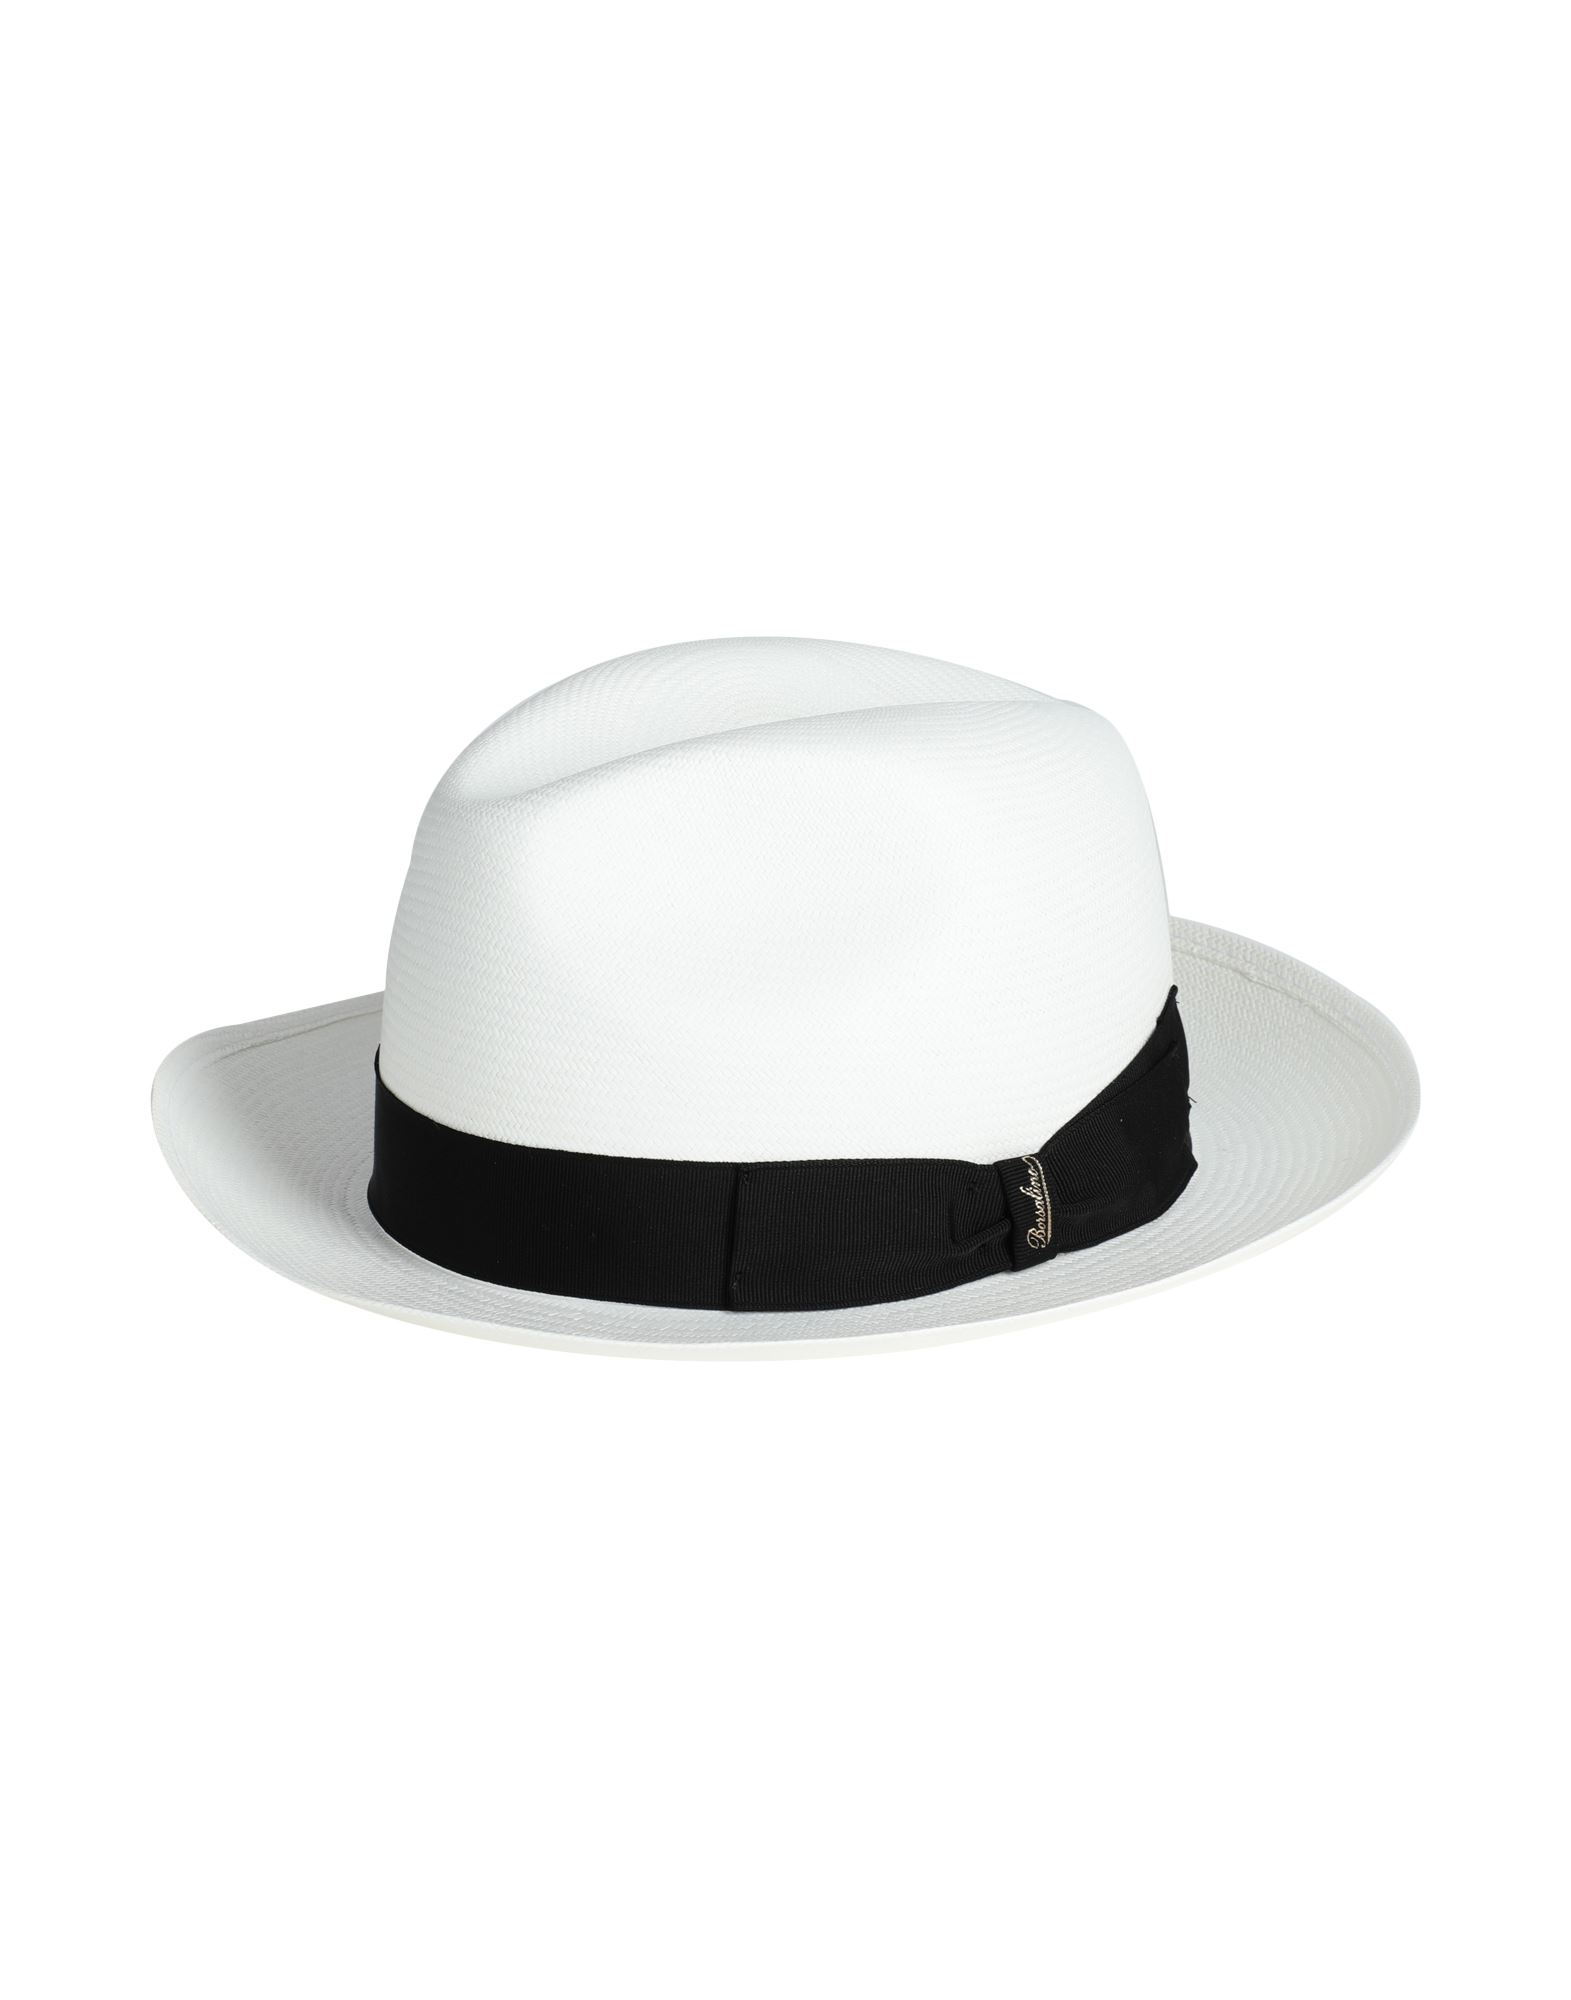 ボルサリーノ(Borsalino) パナマハット メンズ帽子・キャップ | 通販 